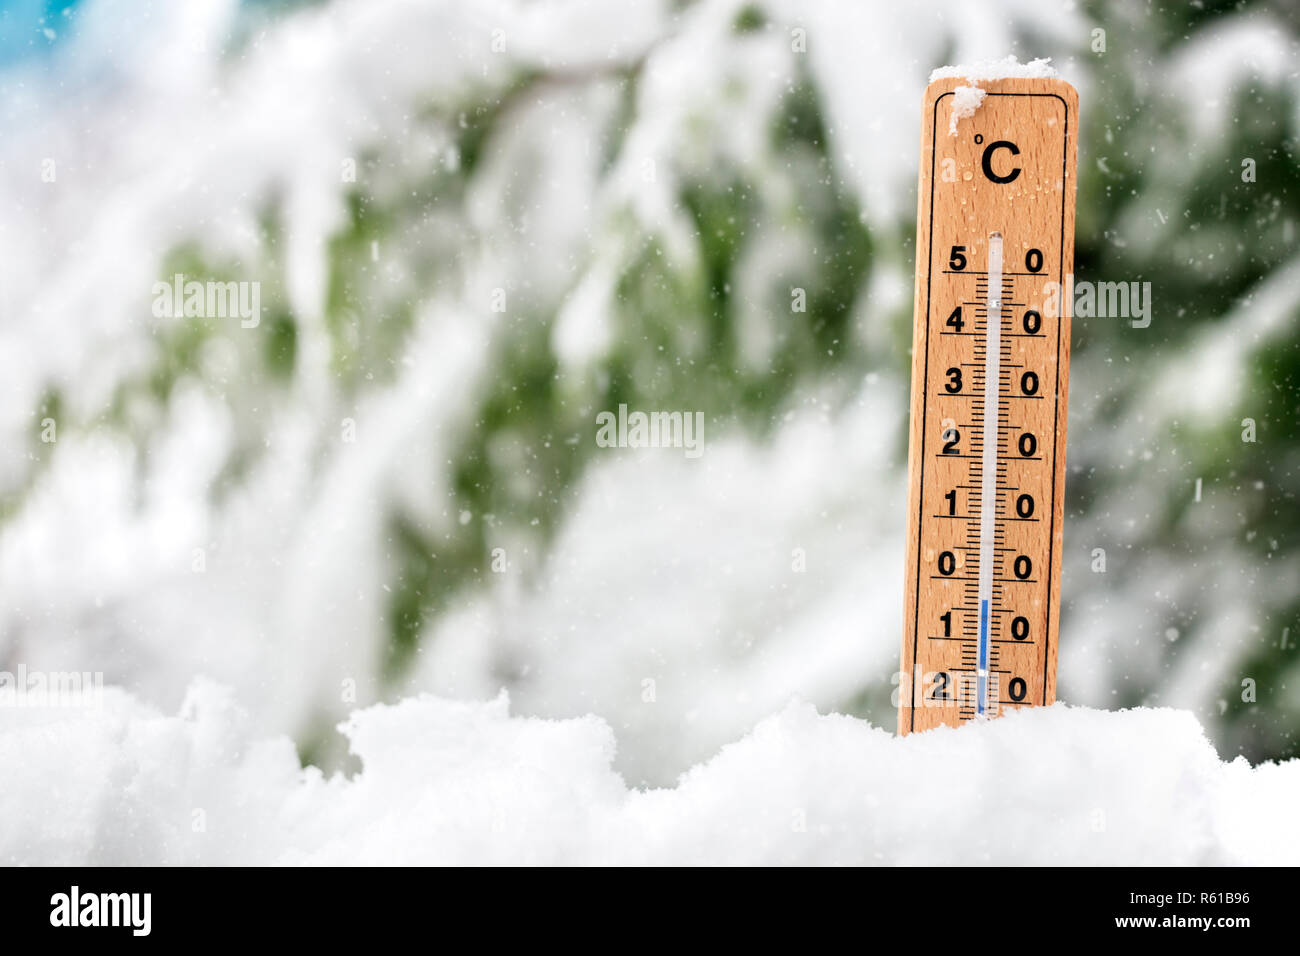 Le froid Thermomètre indiquant la température dans le concept de la neige pour l'hiver Banque D'Images